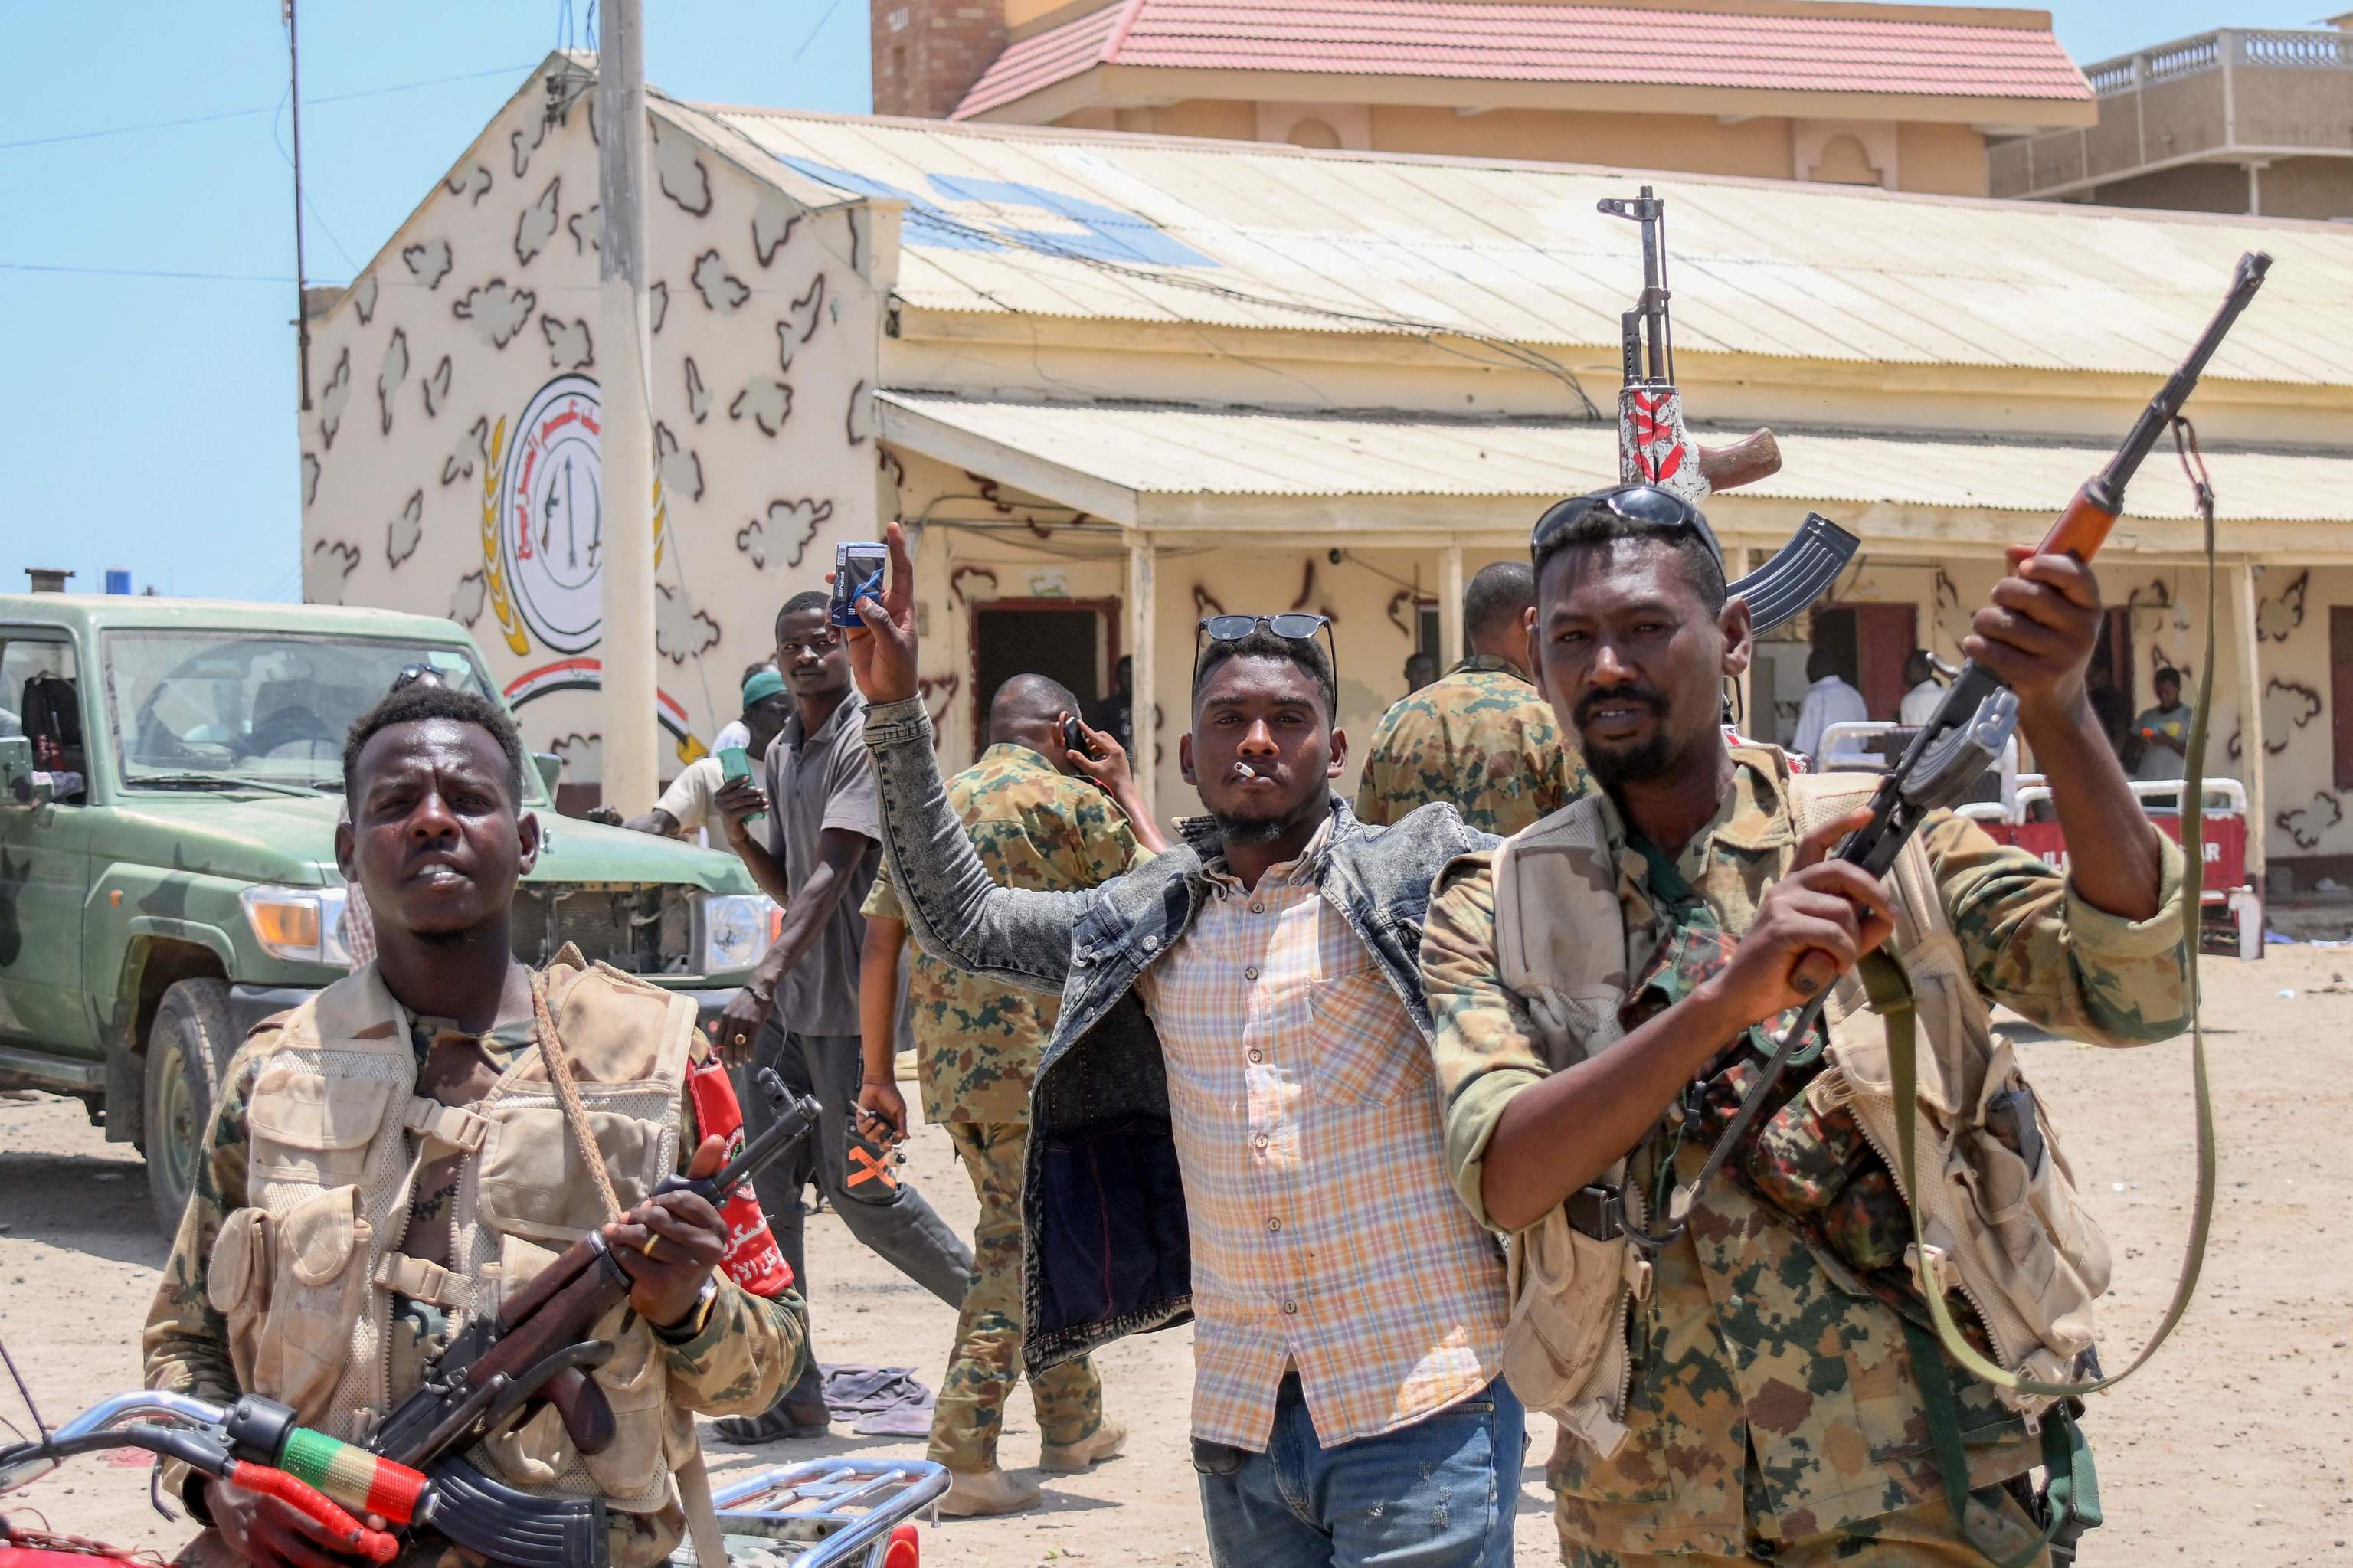 guerra - Sudán del Sur se encamina hacia la guerra civil - Página 2 F2YX7VQ4SZF45ADH2XQWFXIA5A